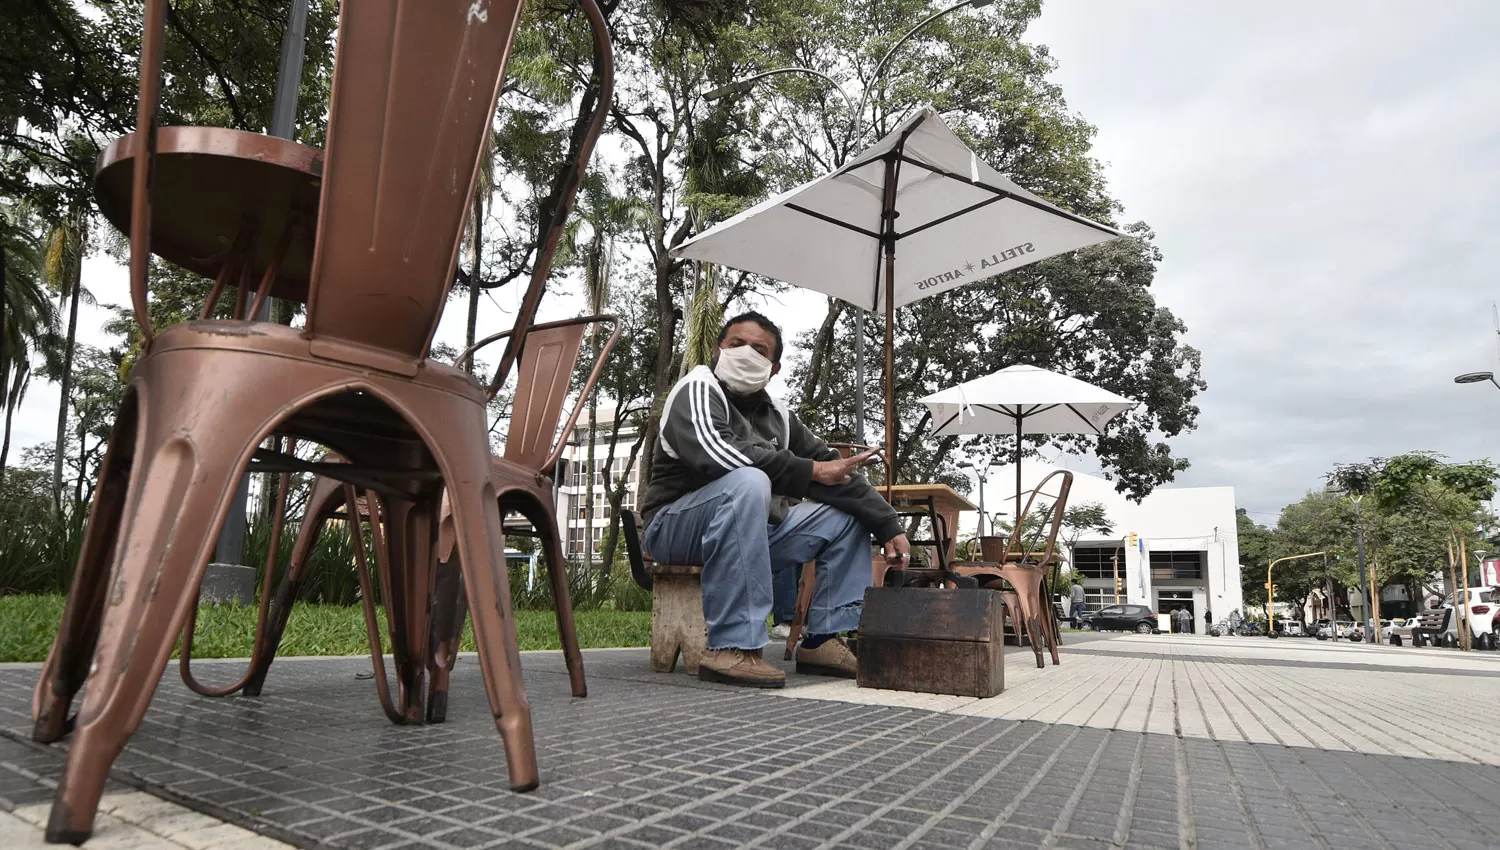 DÍA A DÍA. Pese a las restricciones, un hombre espera clientes para lustrar zapatos en la plaza de Concepción.